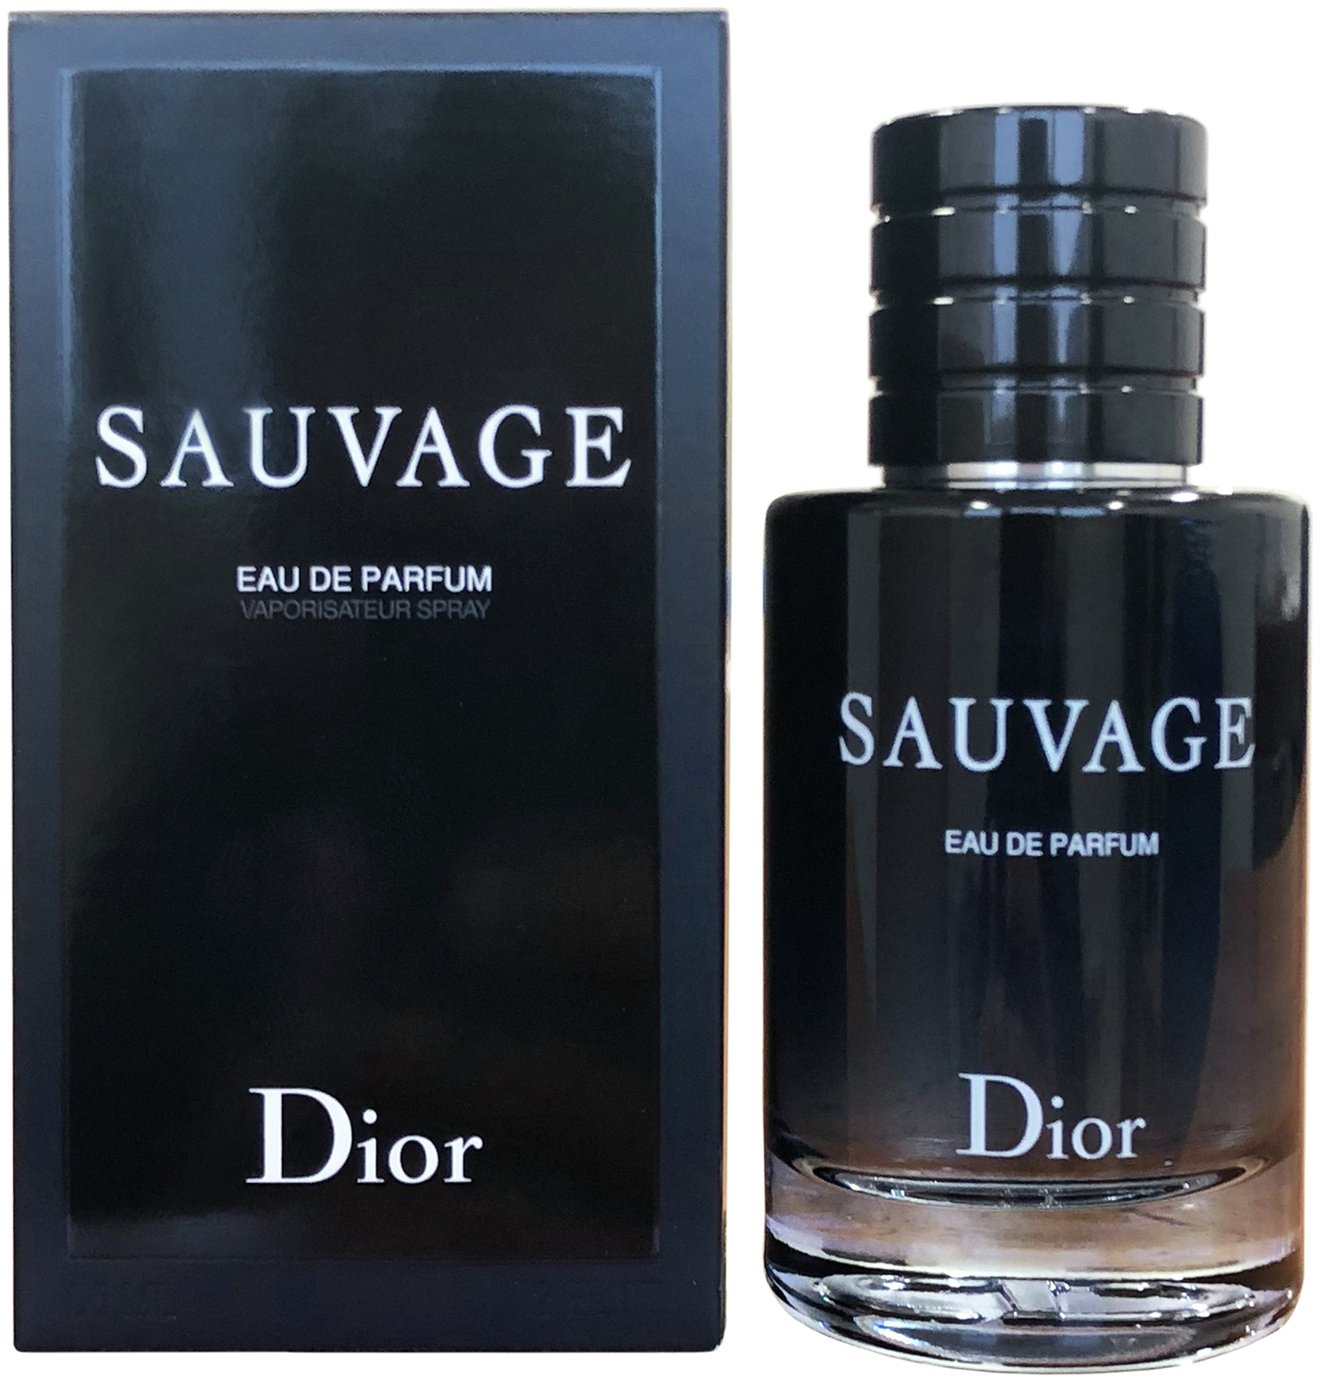 dior sauvage edp 200ml price